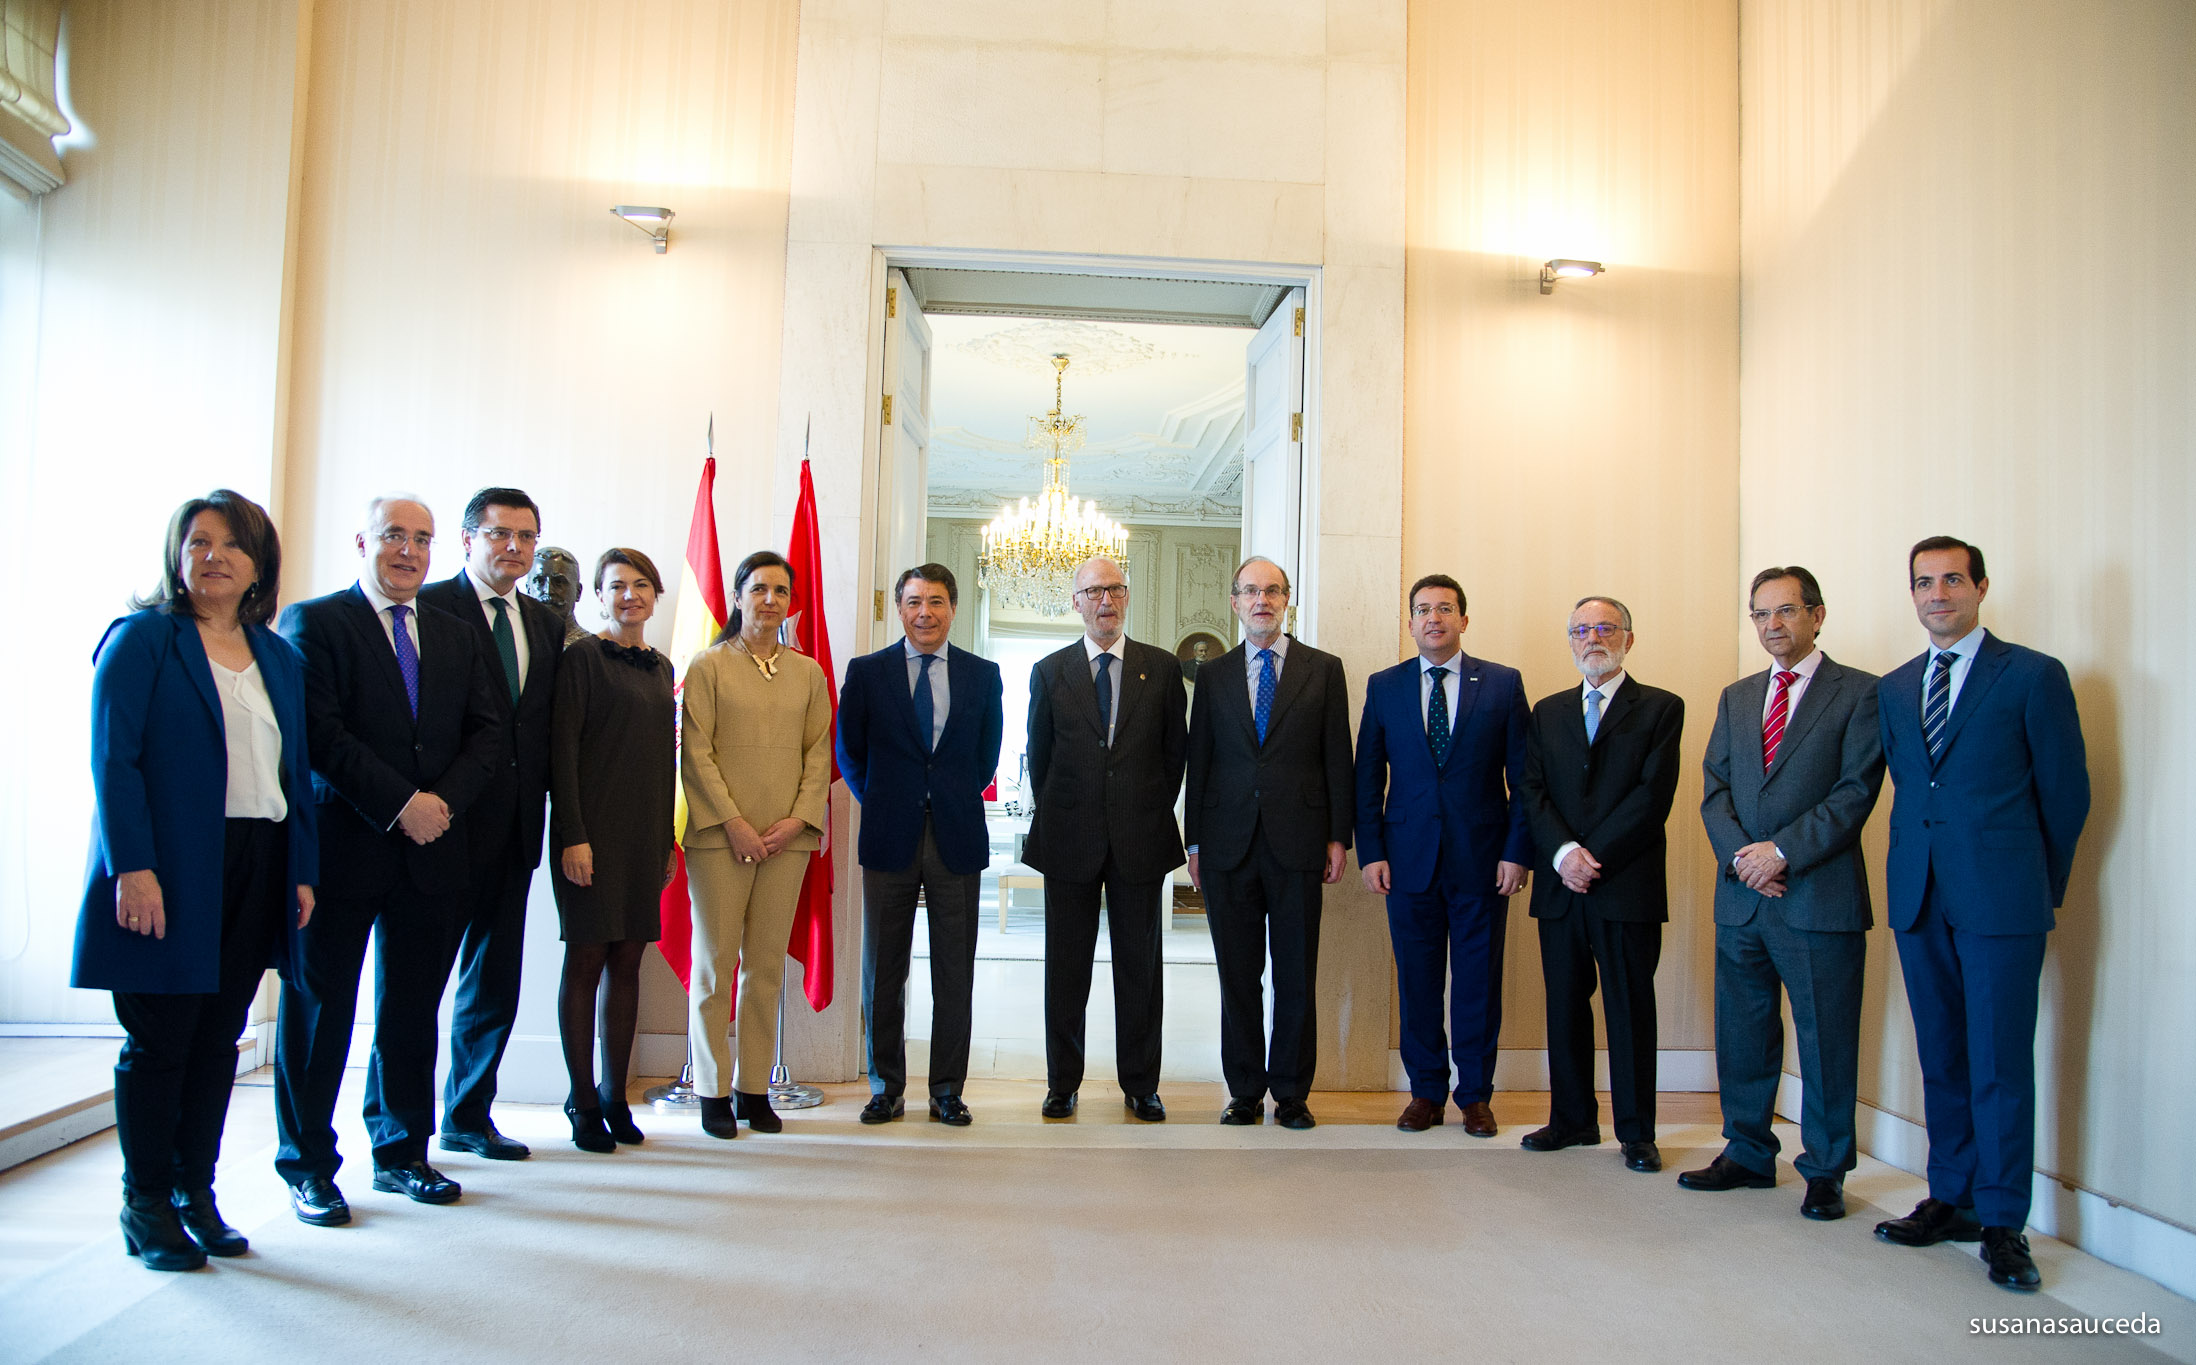 Los presidentes de Parlamentos Autonómicos con el presidente de la Comunidad de Madrid.